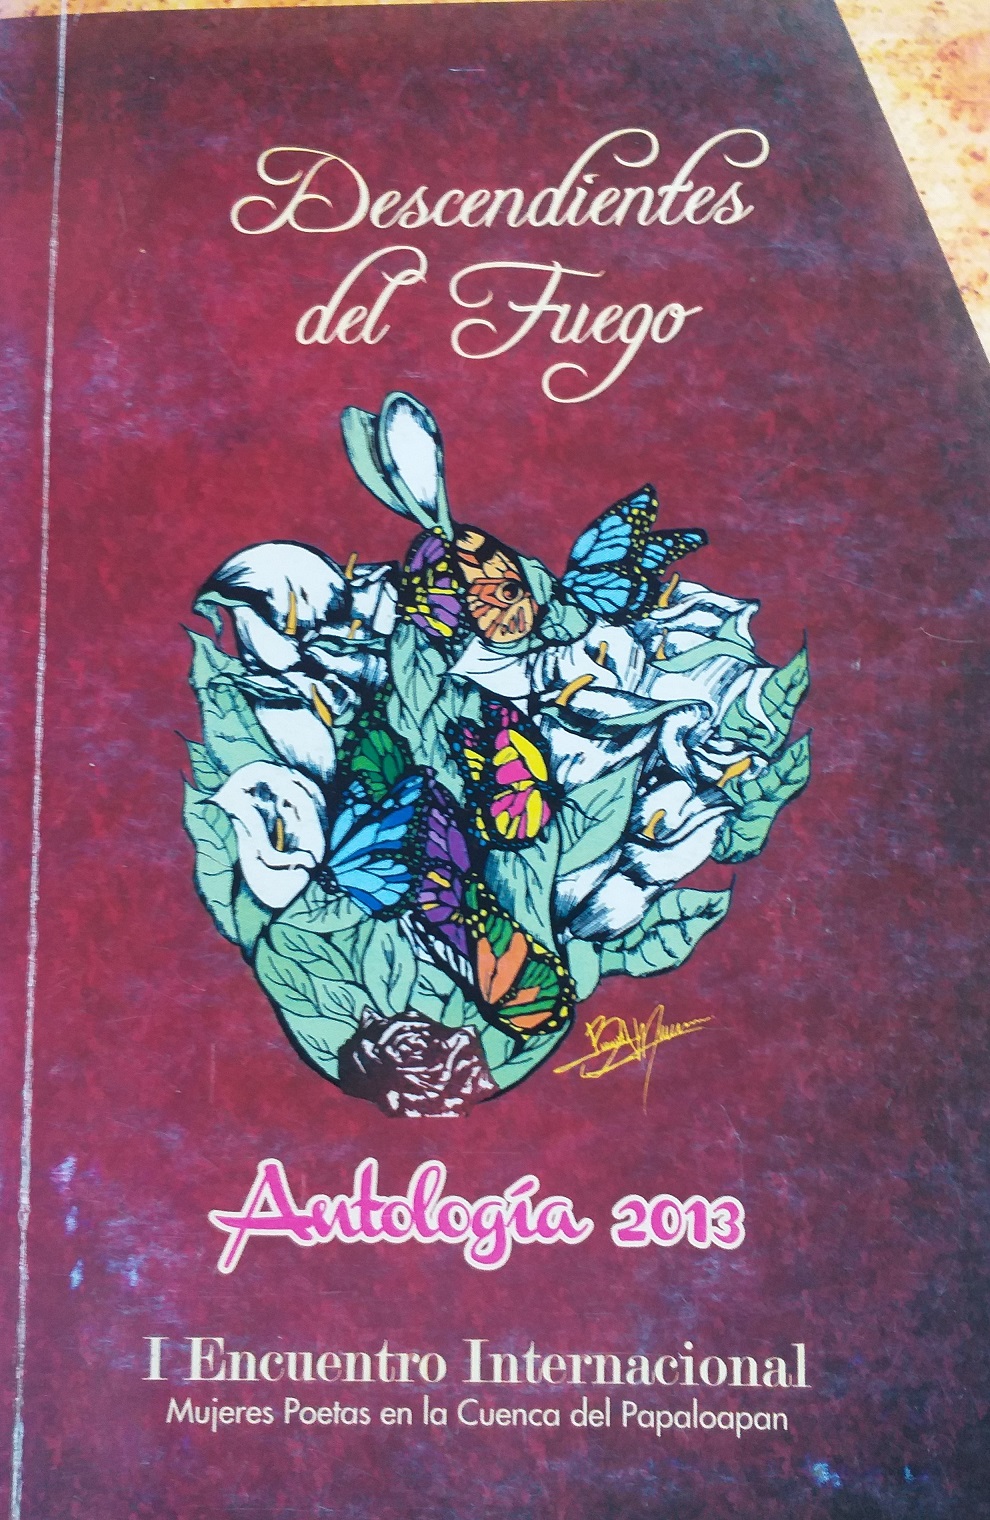 Antología poética, Descendientes de fuego, 2013